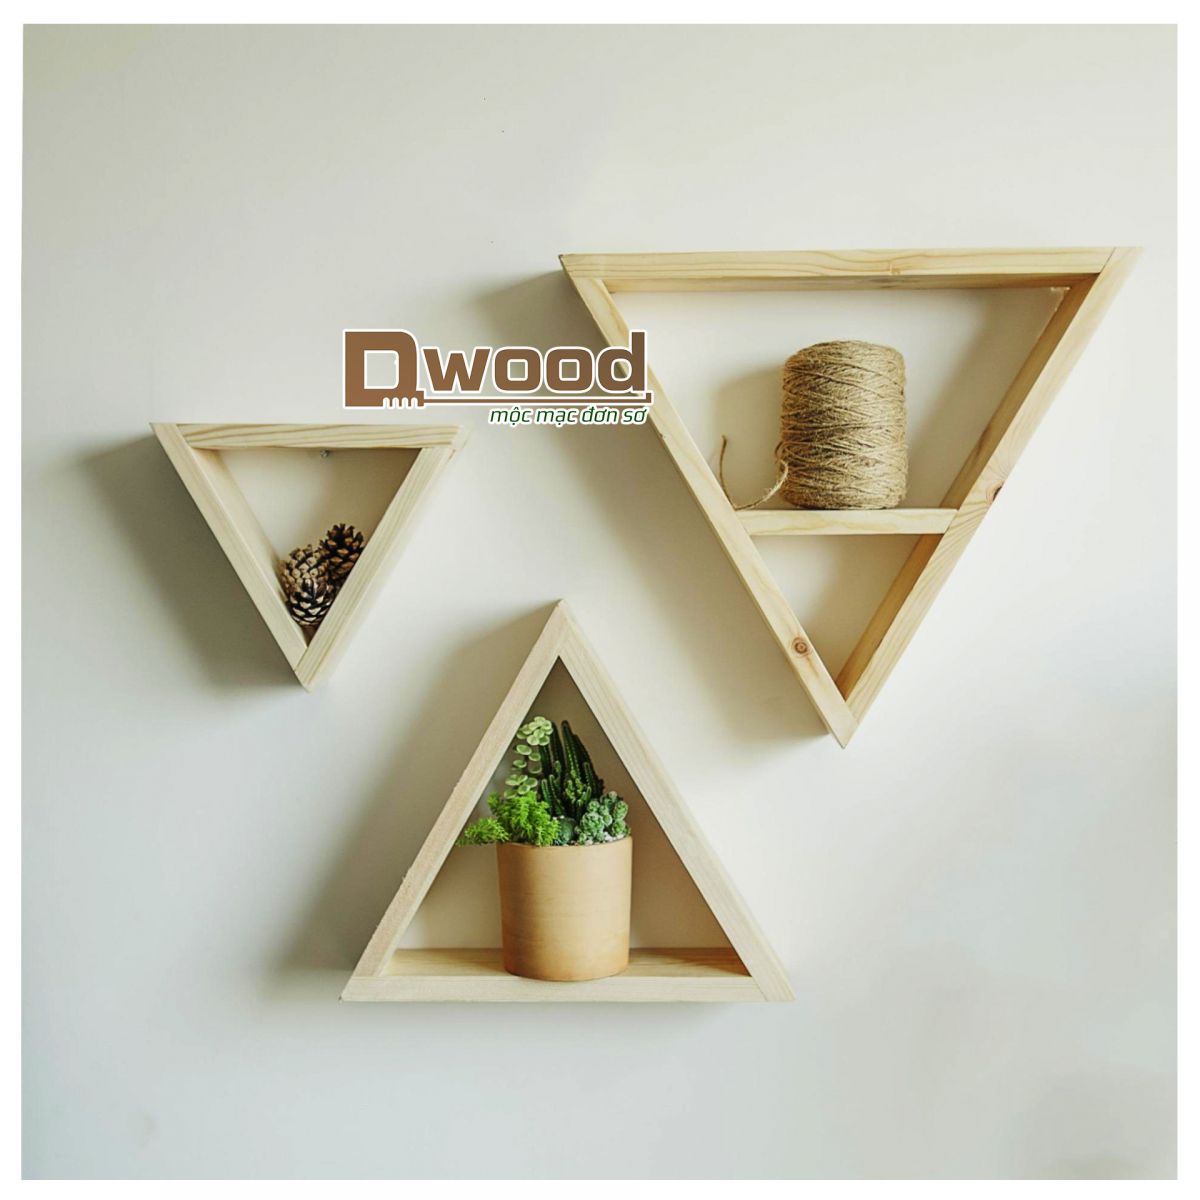 Kệ gỗ thông Dwood hình tam giác treo tường Decor không gian - Size Lớn : 40x 40x9 cm